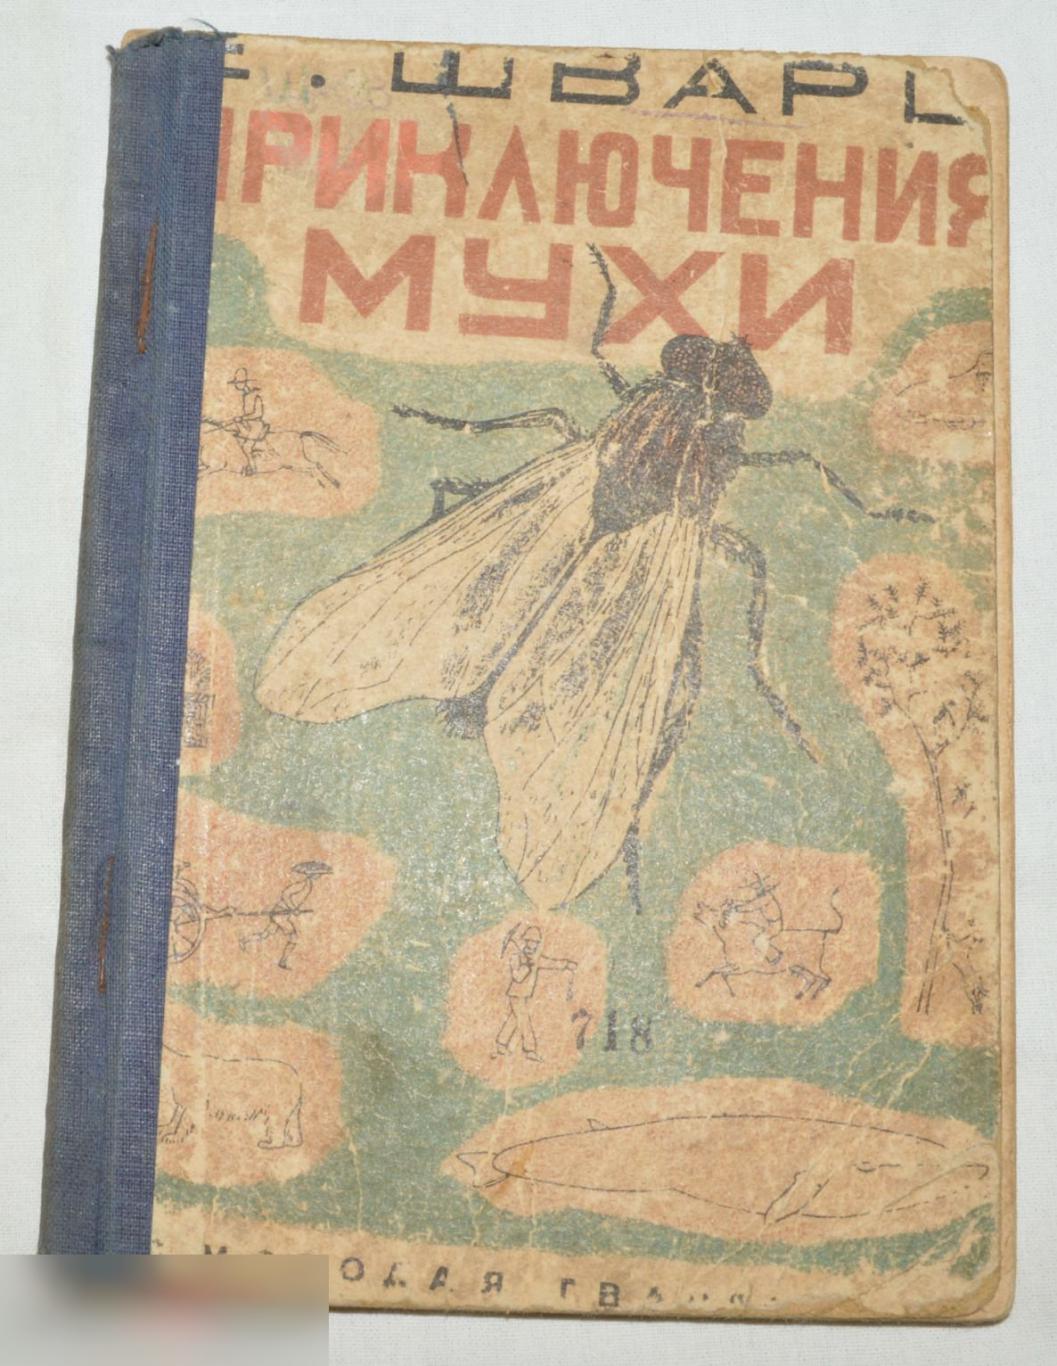 Е. Шварц. приключения мухи. 1932 г.